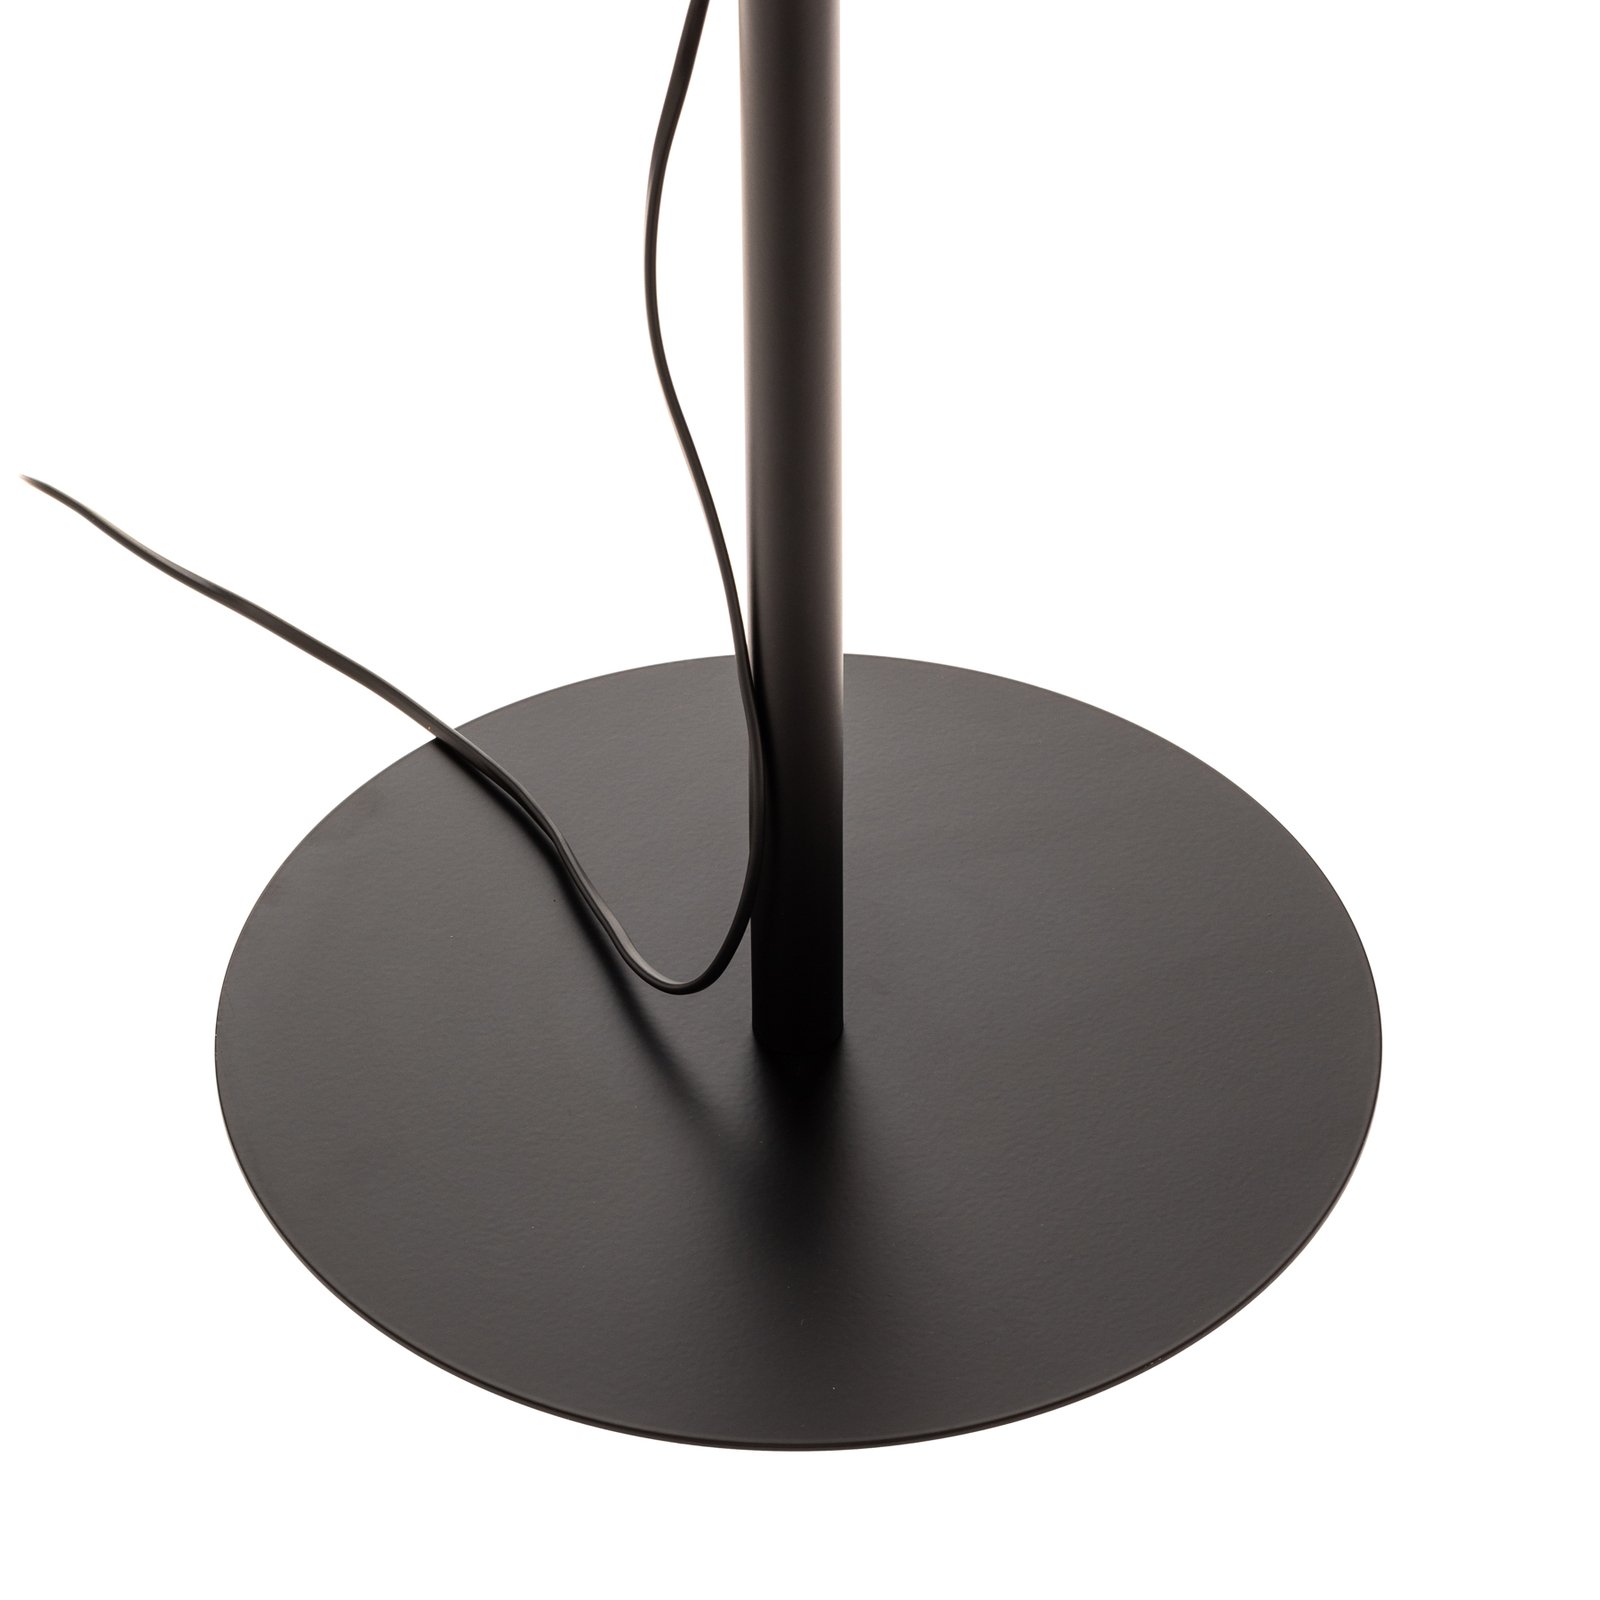 Golvlampa Arden utan skärm, svart, höjd 138 cm